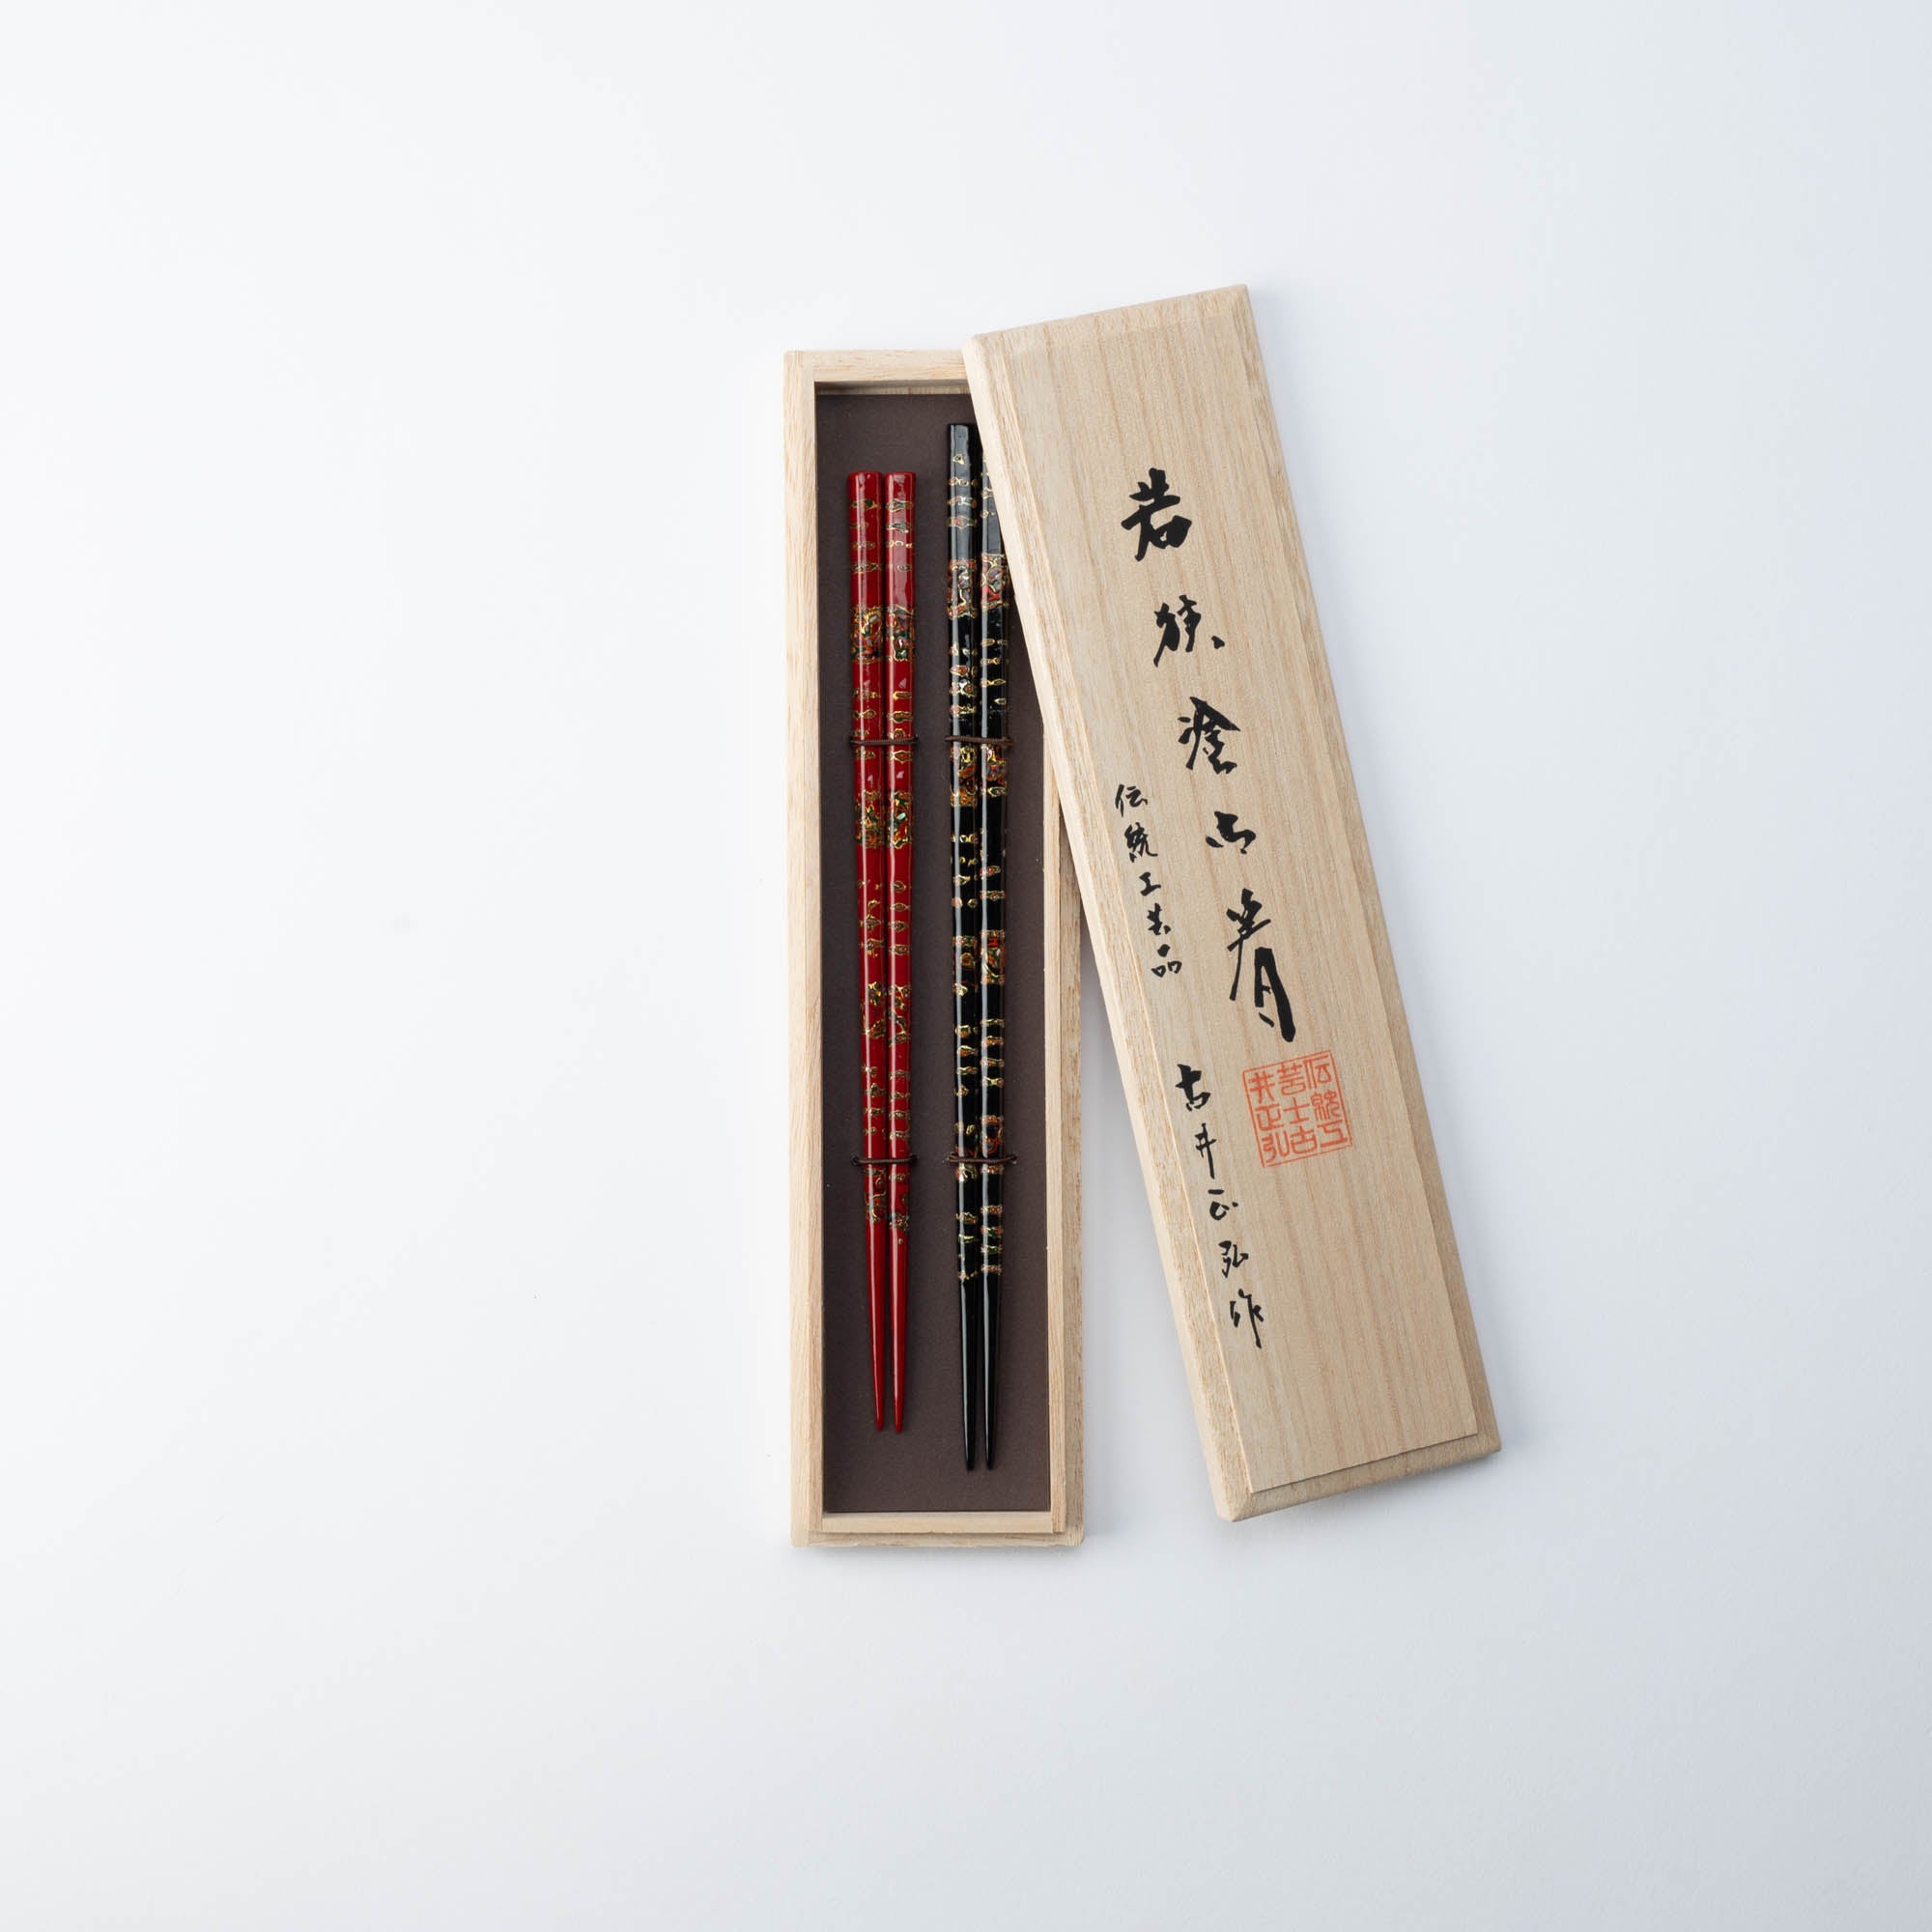 Matsukan Chiyo-Nishiki Wakasa Lacquerware Set of Two Pairs of Chopsticks 23.5 cm (9.3 in)/21.5 cm (8.5 in)